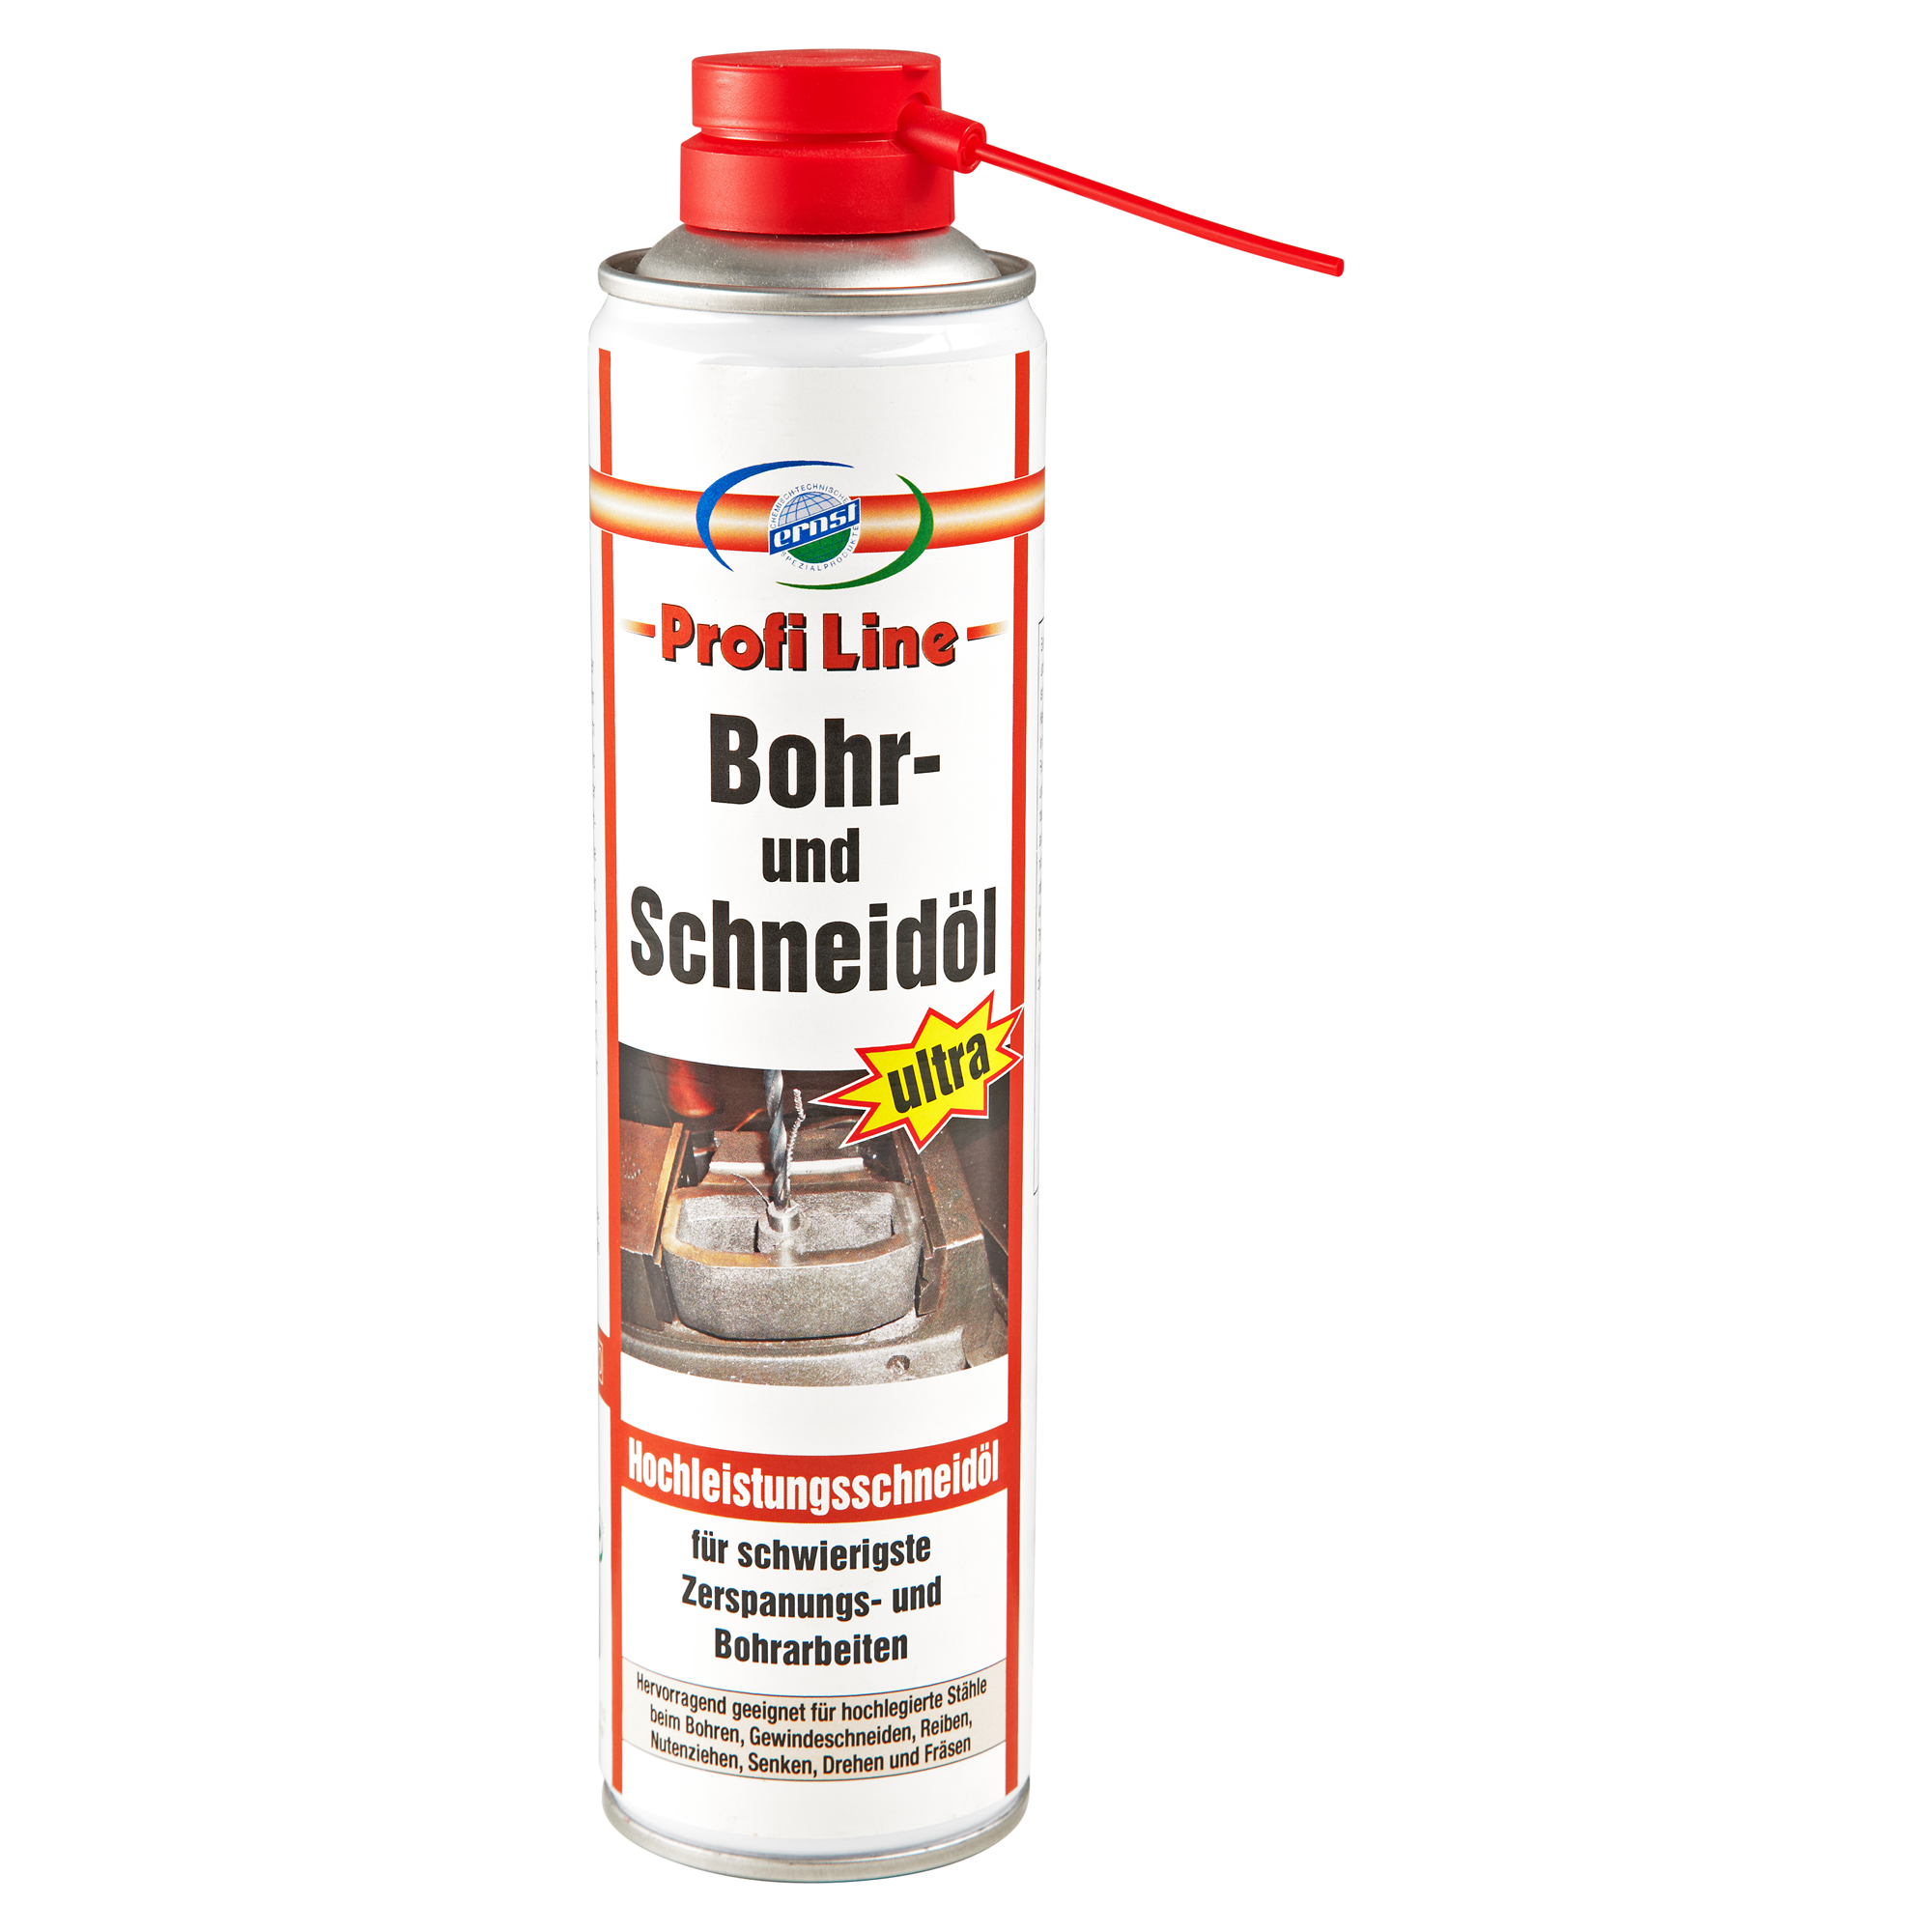 Bohr- und Schneidöl "Profi Line" 400 ml + product picture